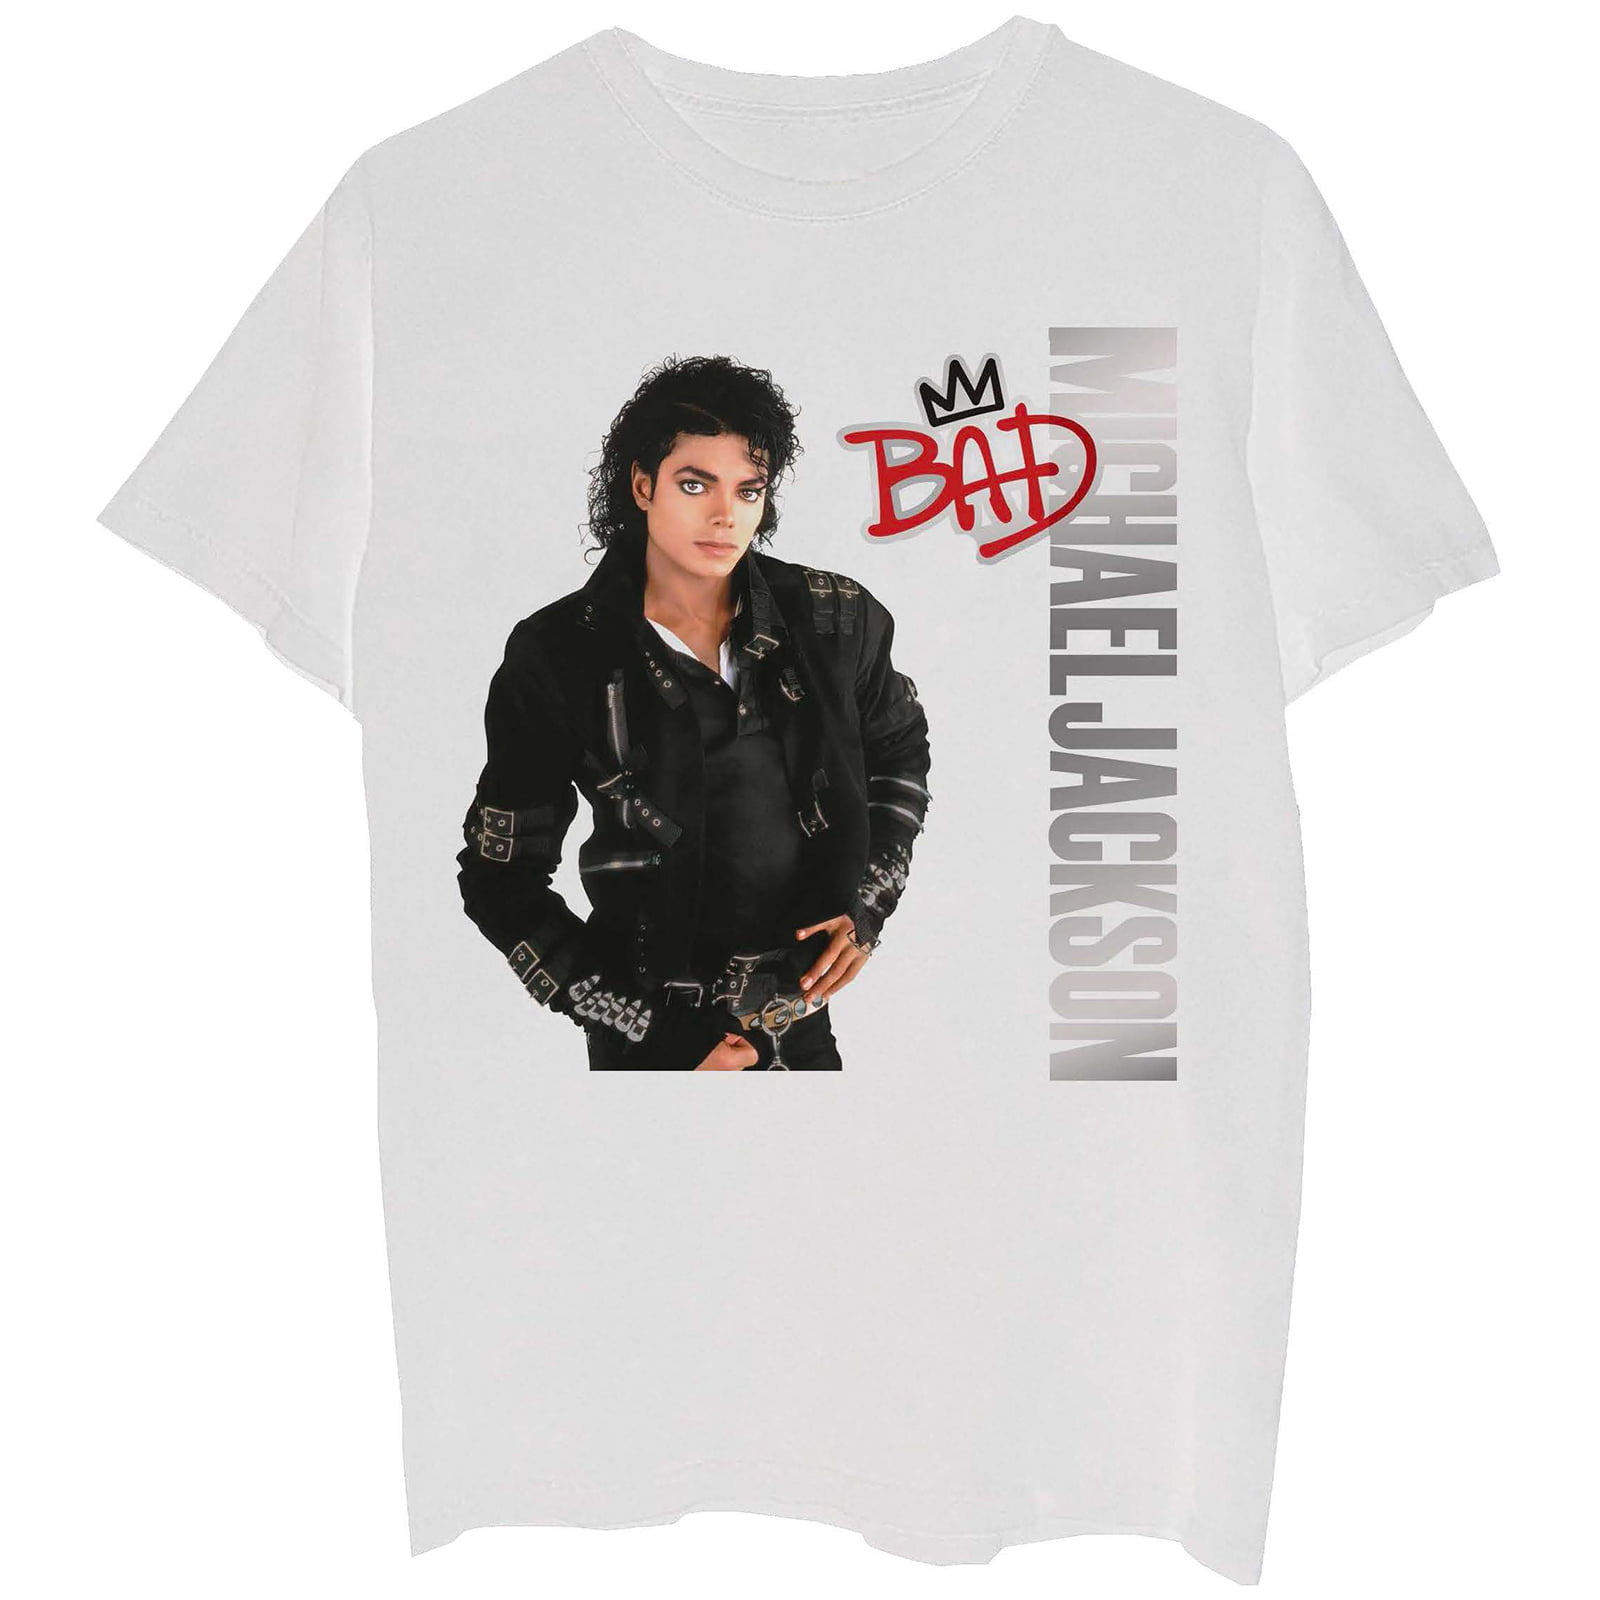 Michael Jackson - men's t-shirt size L